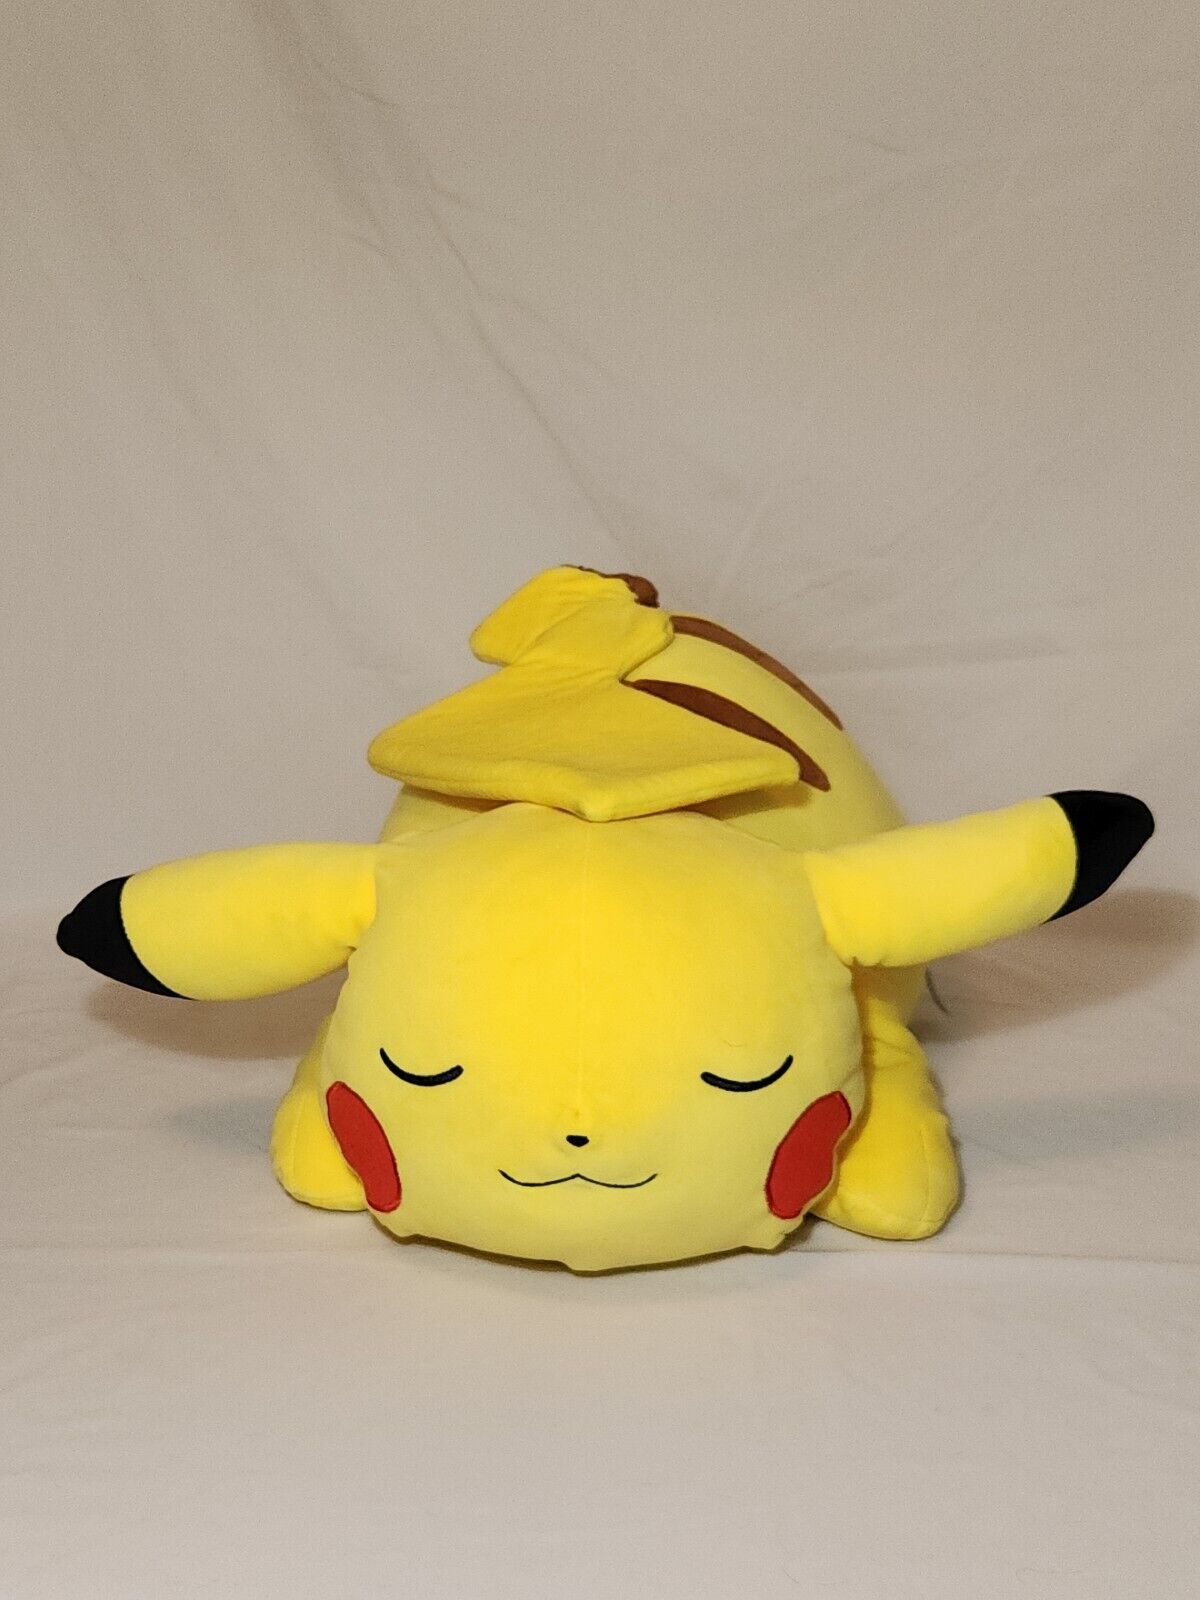 Pokemon 18” Sleeping Pikachu Soft Jumbo Large Plush Stuffed Pillow Buddy